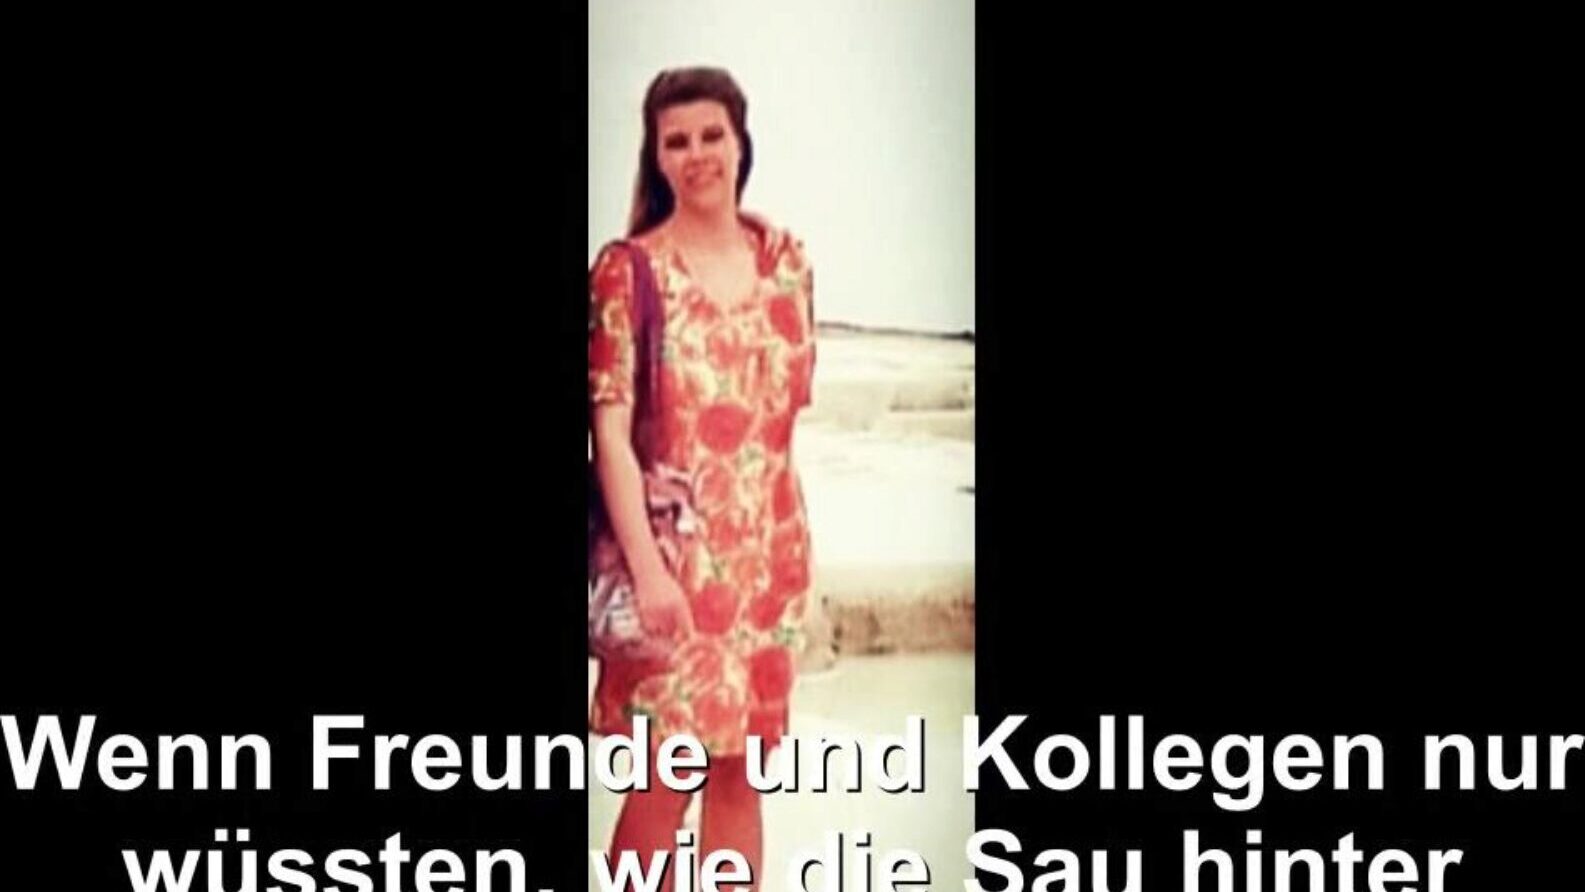 izložena njemačka domaćica, besplatna cijev njemački hd porno bd gledati njemačka domaćica izložena filmska scena na xhamsteru, najvećem web mjestu s hd ljubavnim vodama s tonama besplatne cijevi njemačka supruga njemačka i domaće scene porno filma